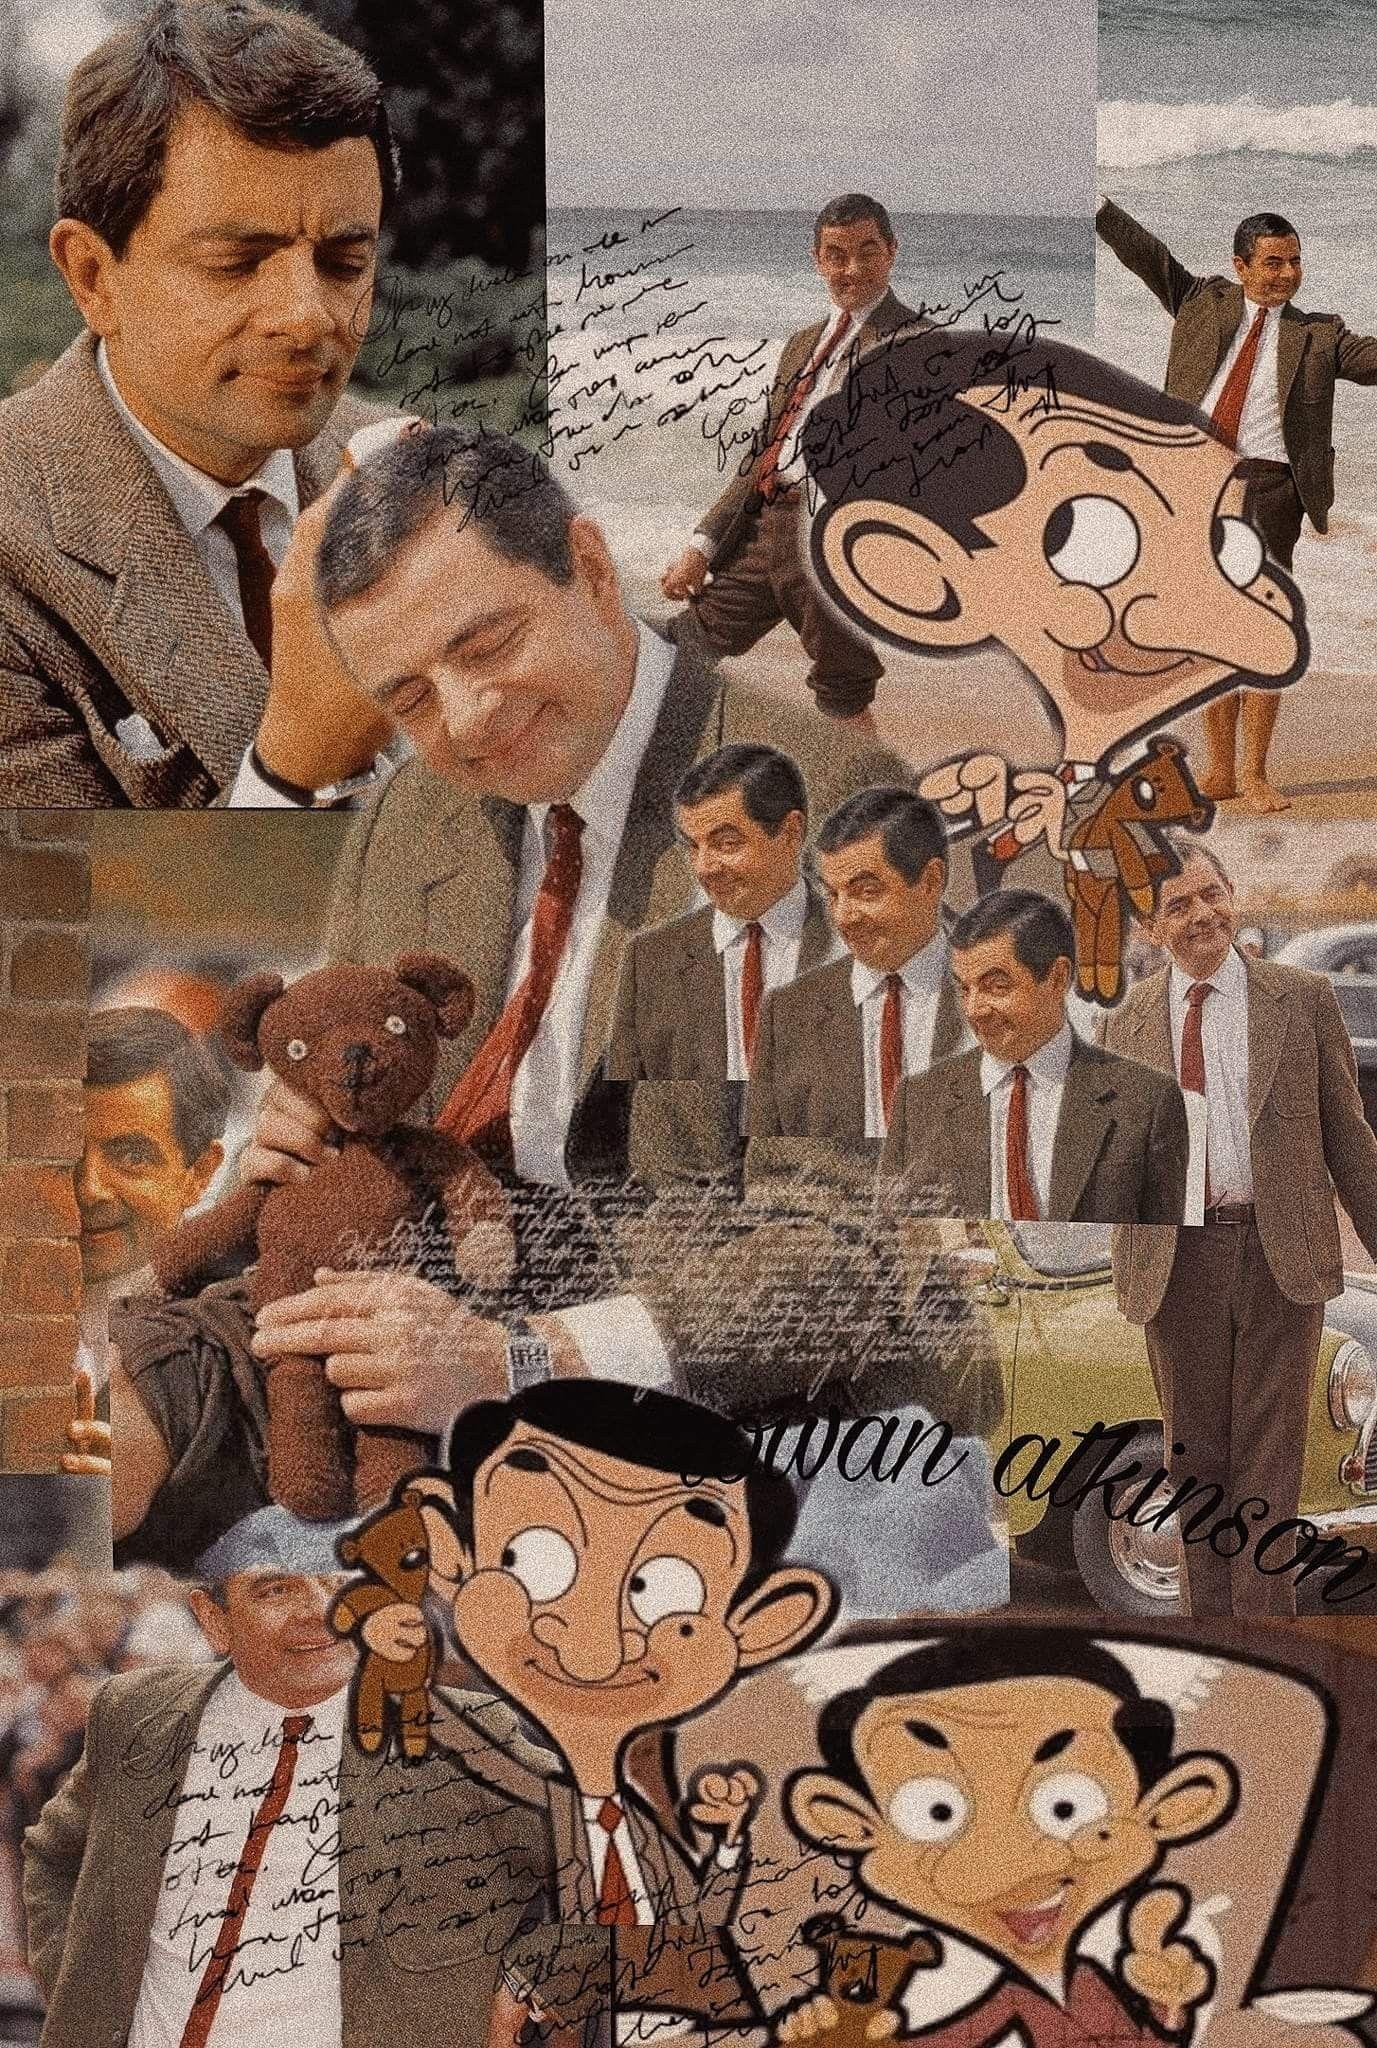 Mr Bean wallpaper